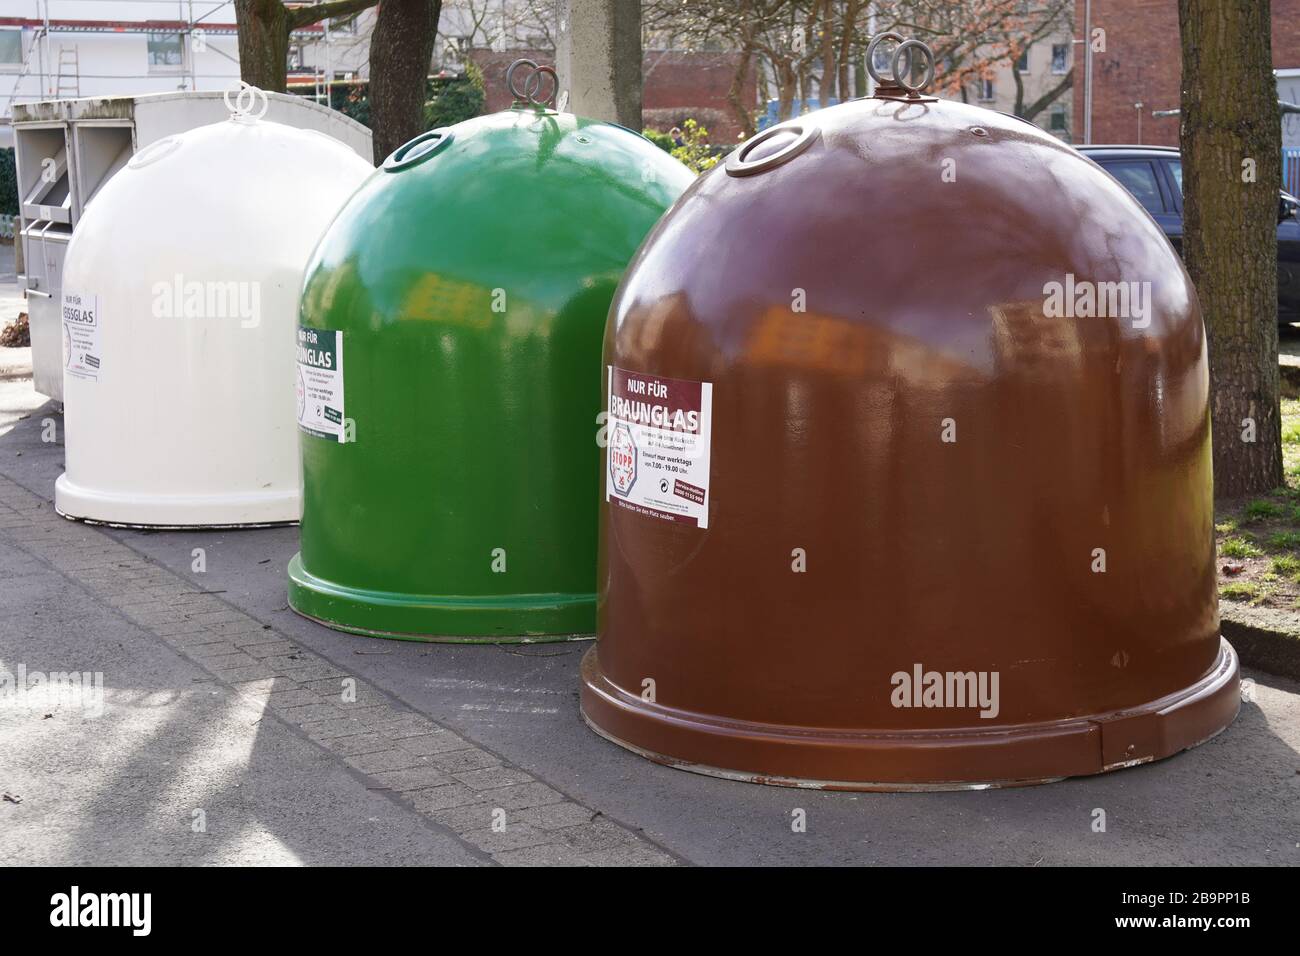 Hanovre, Allemagne - 17 mars 2020: Récipients de collecte de verre ou banques de bouteilles pour la séparation des déchets et le recyclage de verre brun, vert et clair Banque D'Images